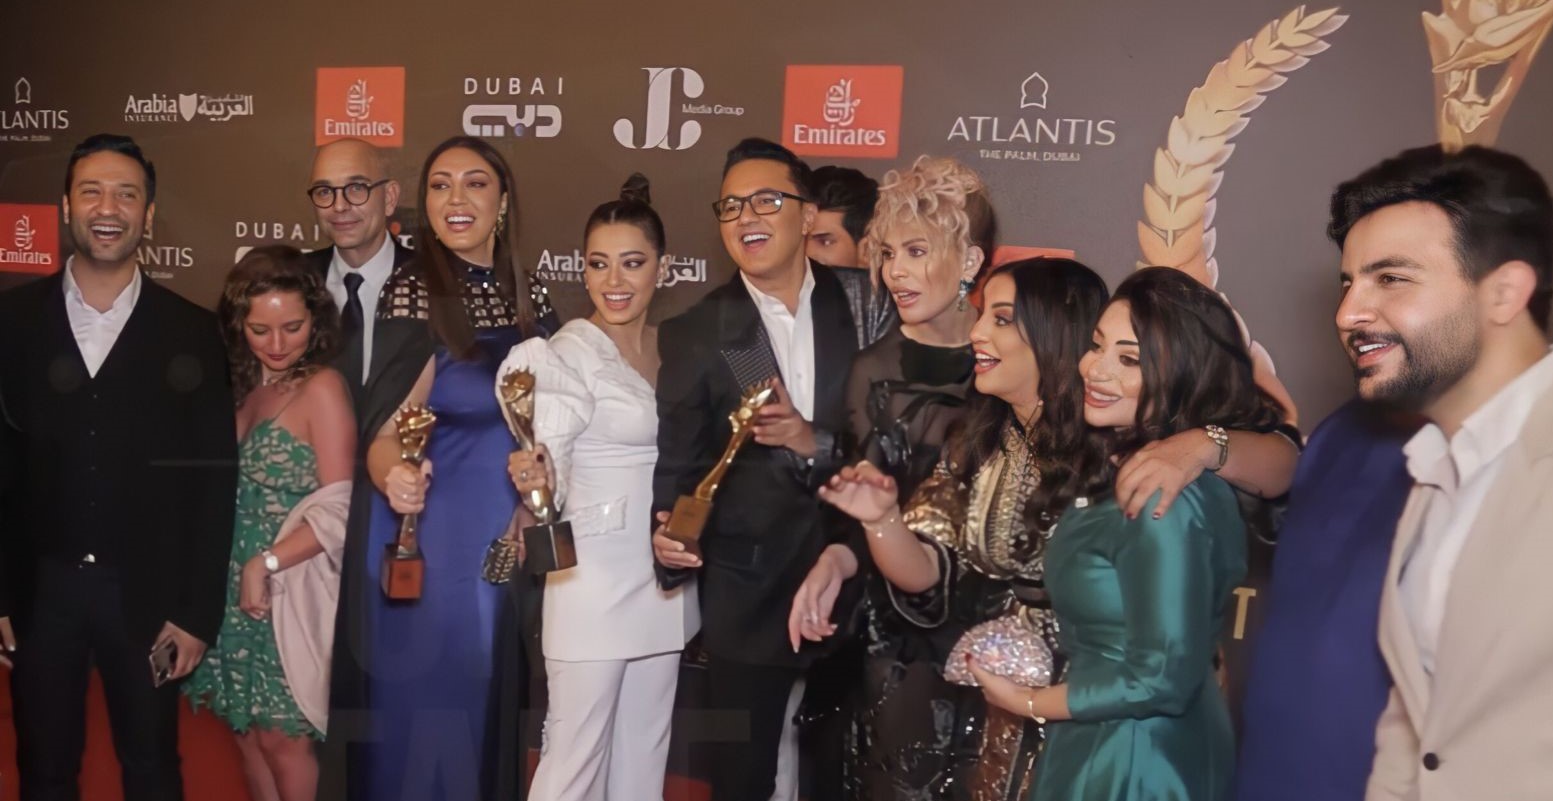 المشاهير العرب يحتفلون بجوائز الموريكس دور على الطريقة المغربية (مع فيديو)